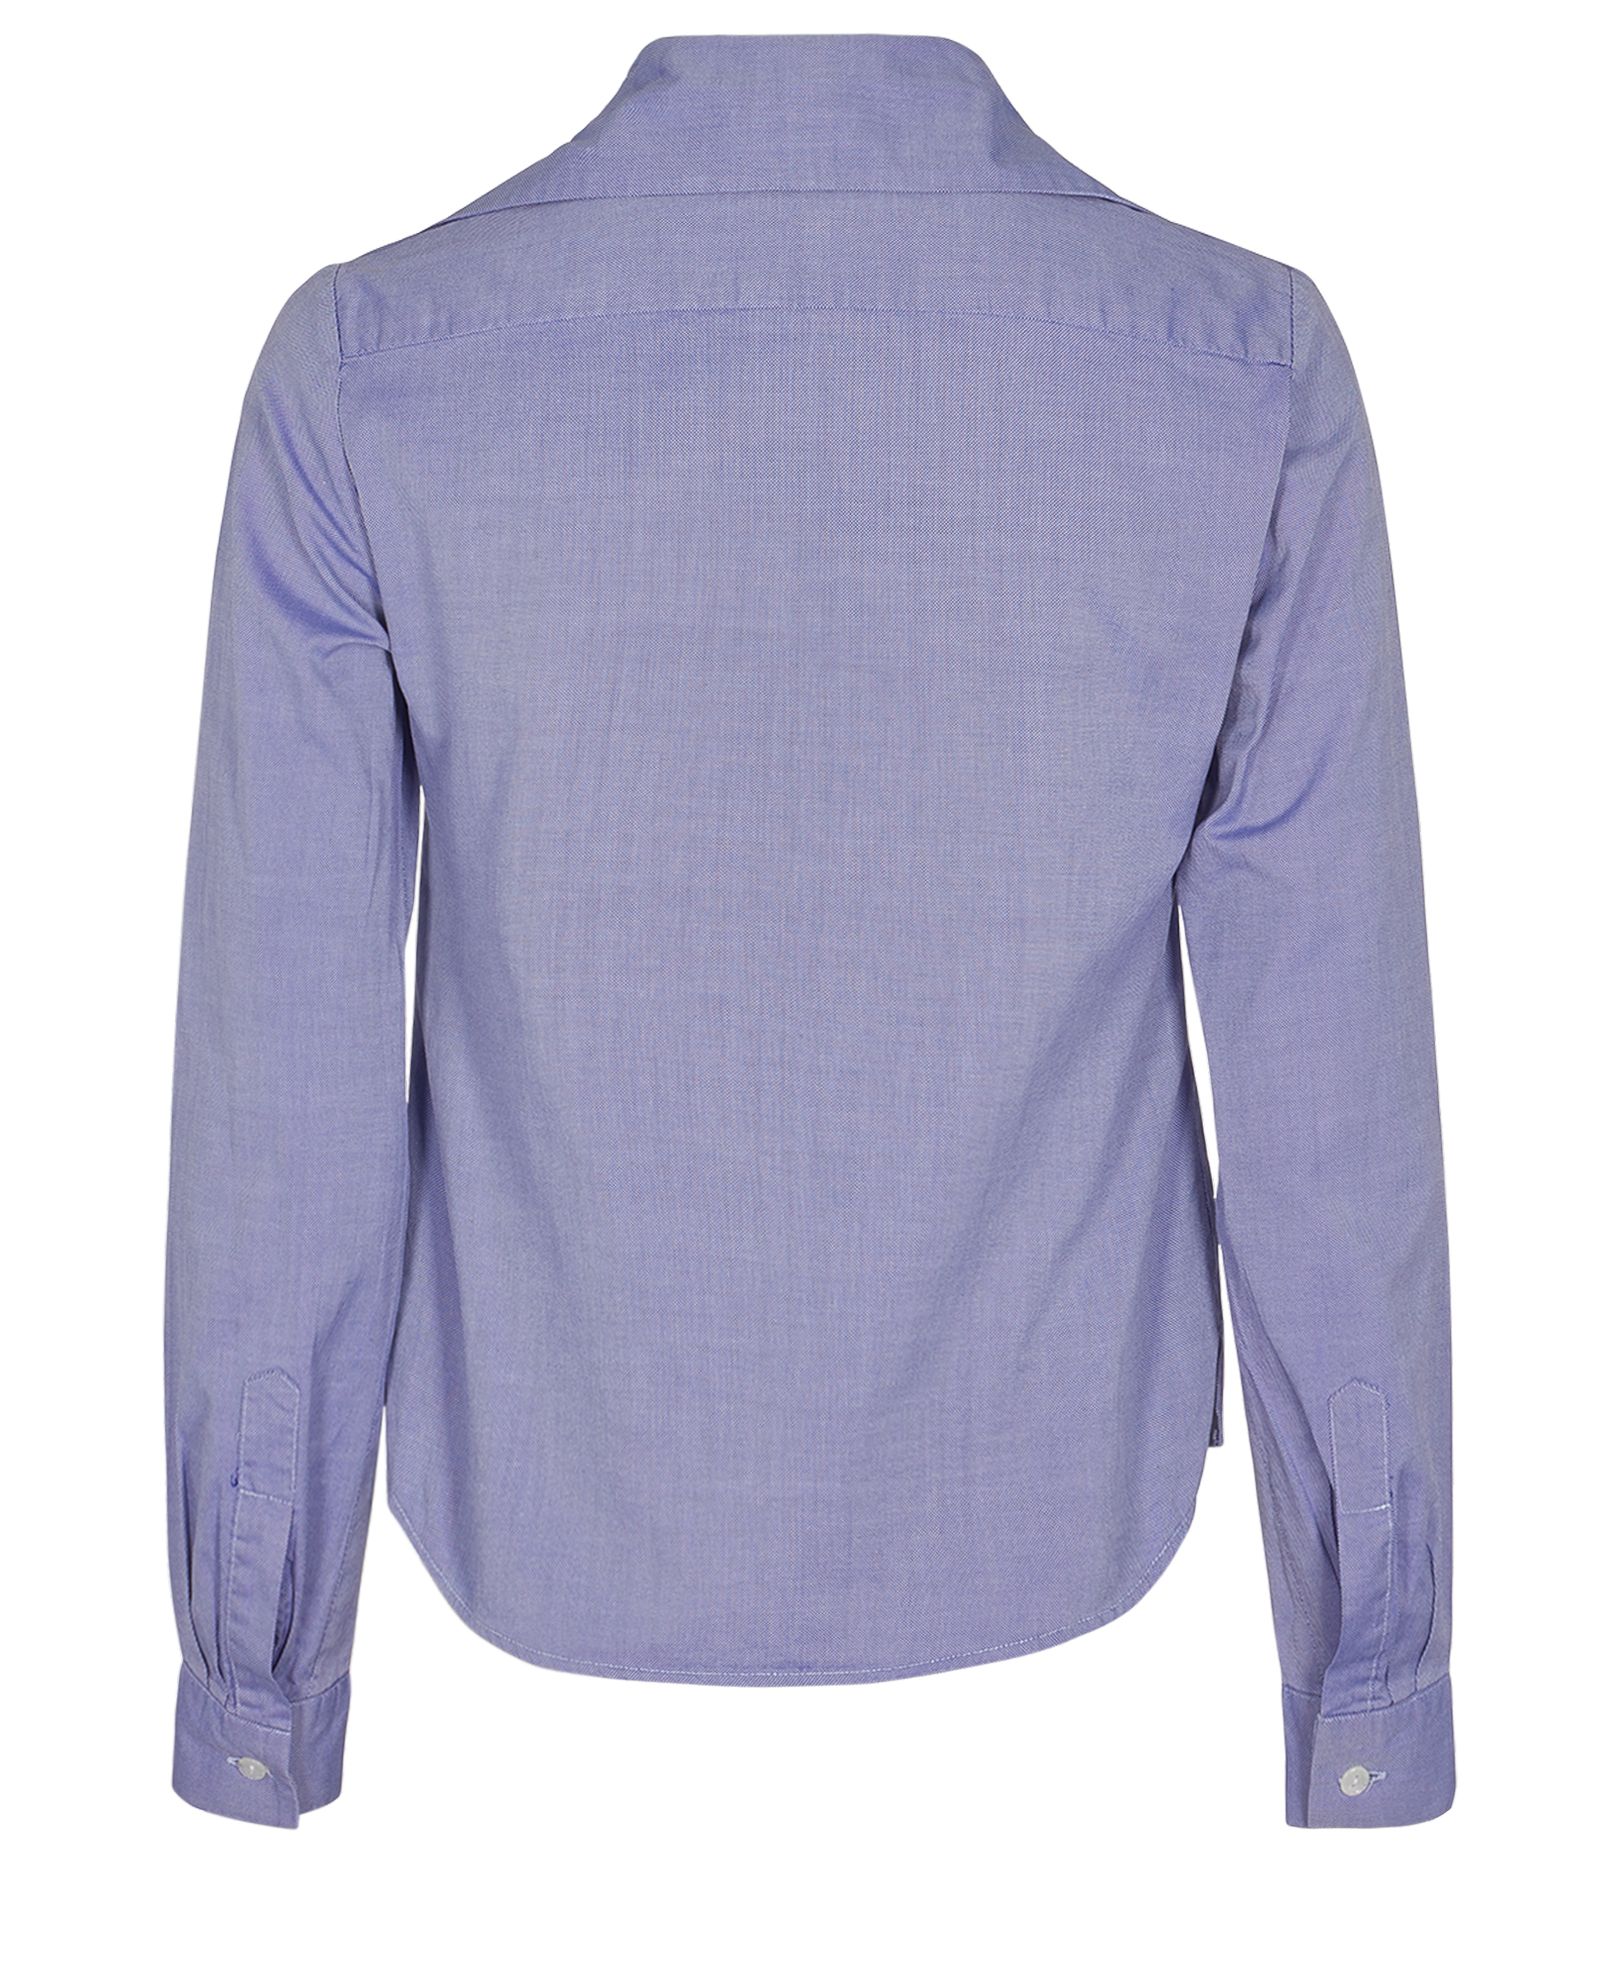 Vivienne Westwood Overlap Collar Shirt, Tops - Designer Exchange | Buy ...